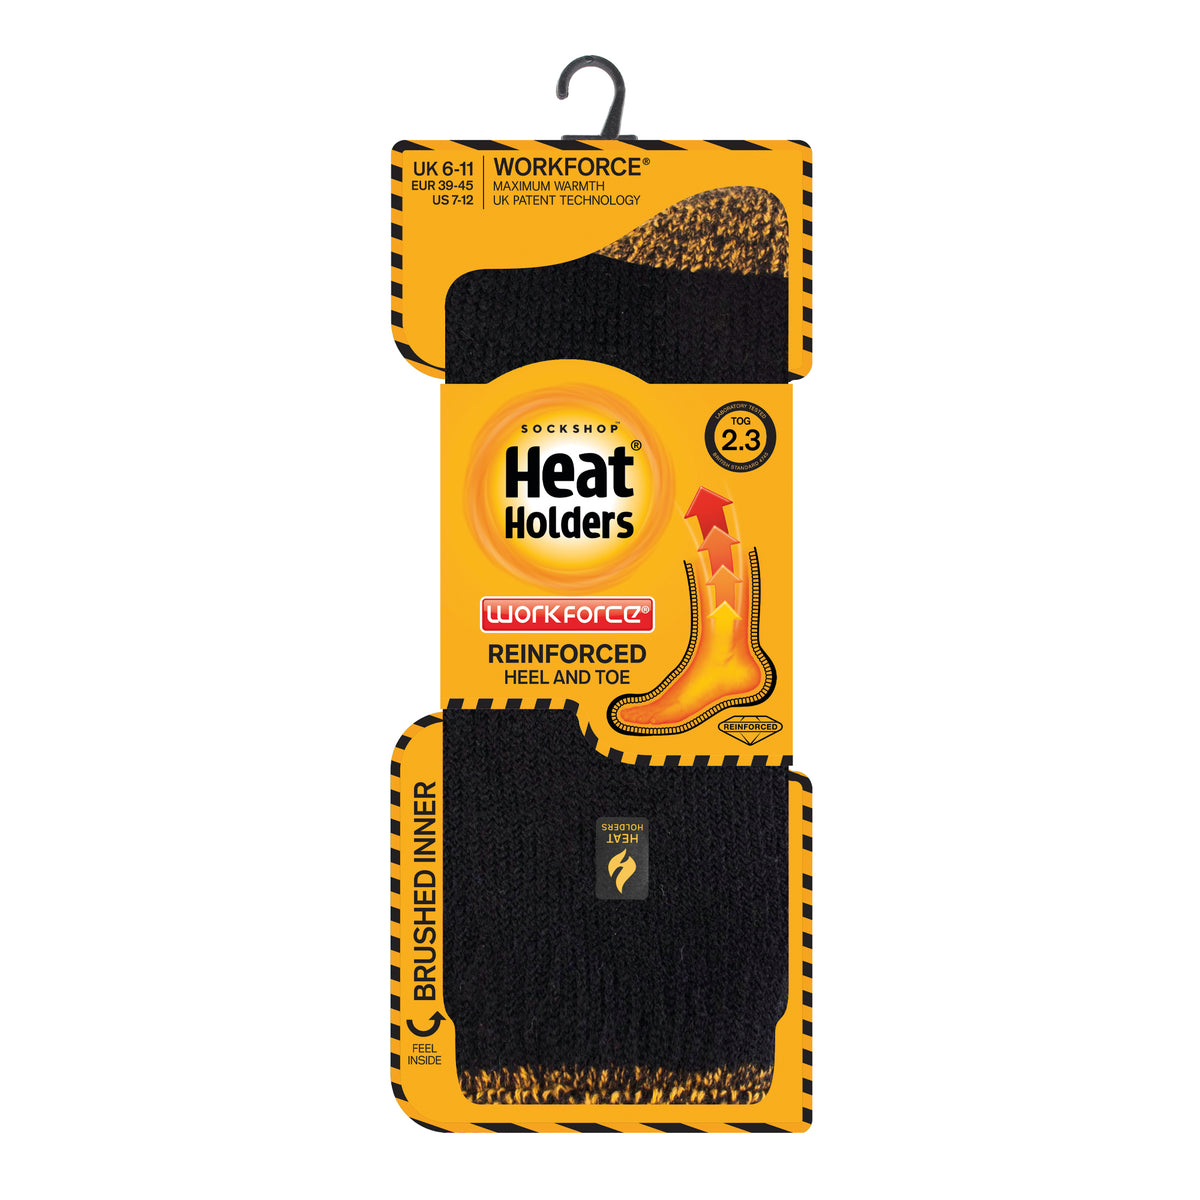 Heat Holders - Homme et garcon enfant chaud antidérapantes chaussettes  thermique